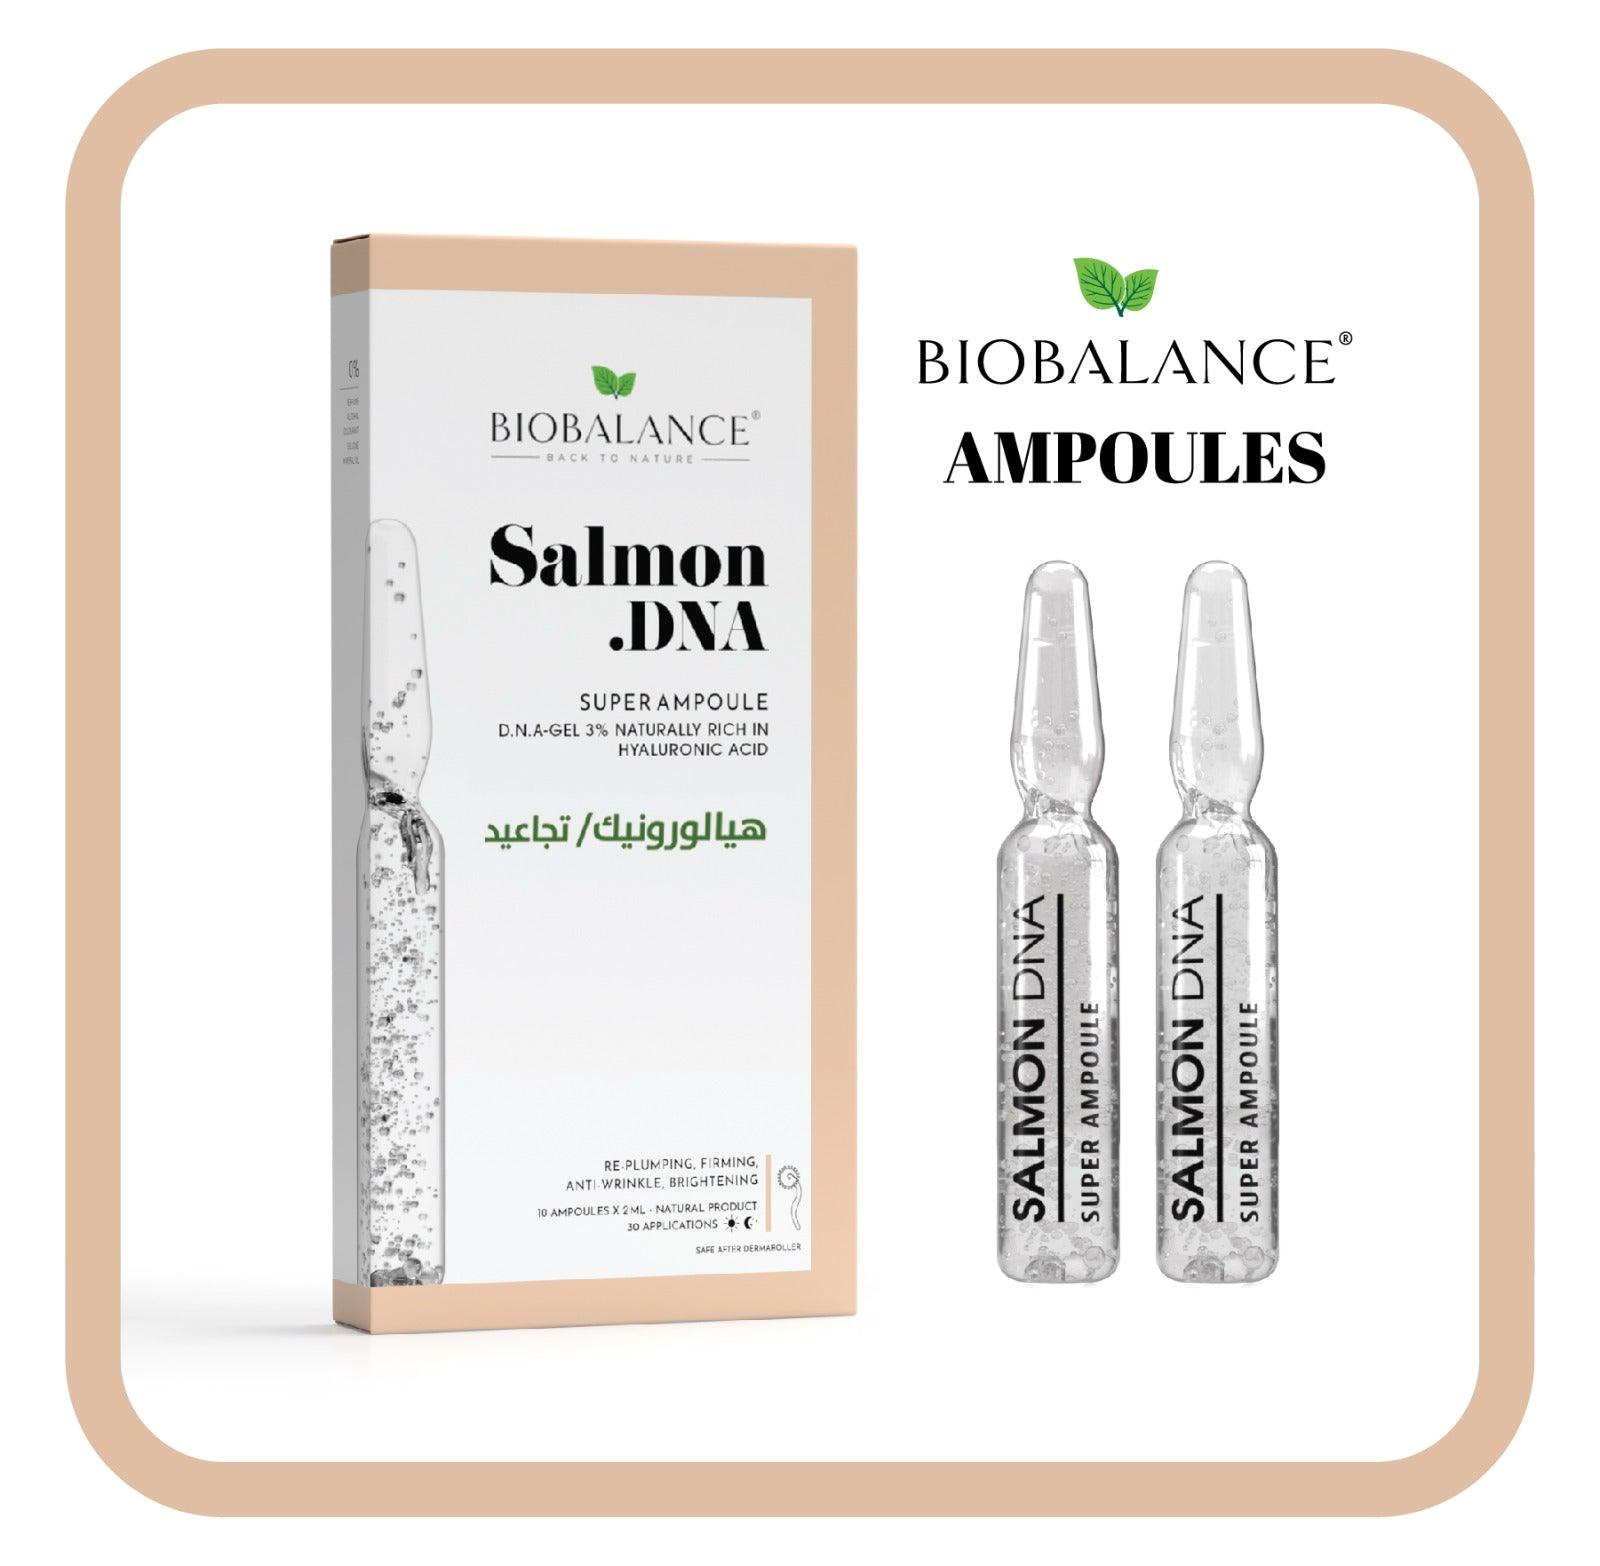 Bio Balance Anti Wrinkles Salmon DNA Super Ampoule 10 x 2 ml